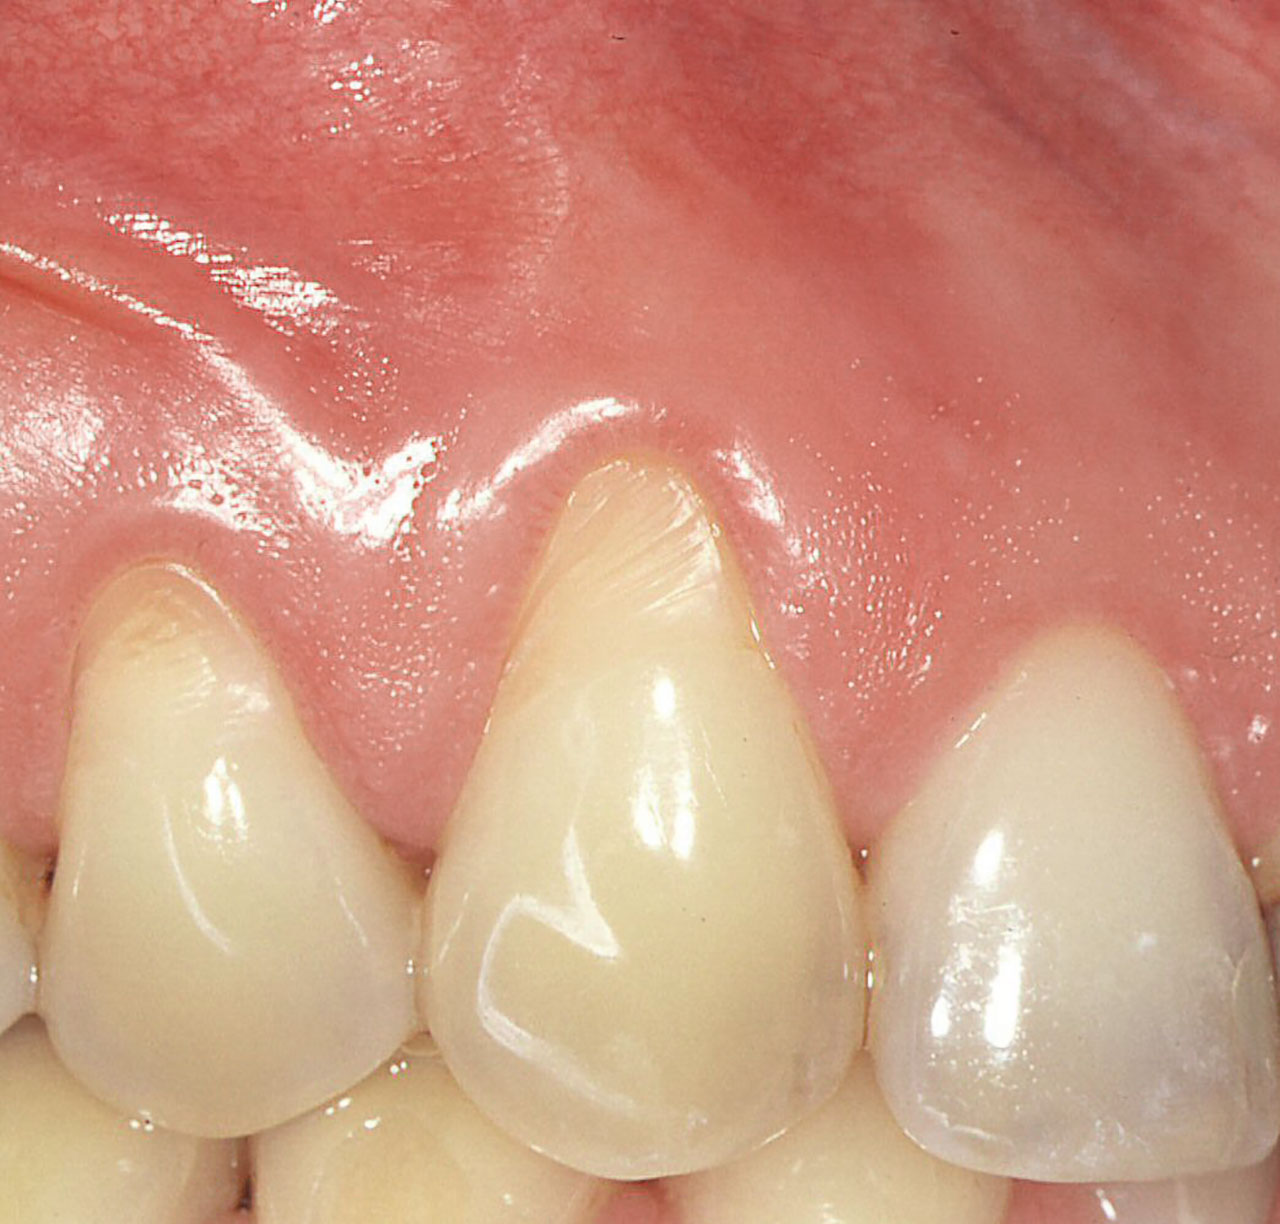 Abb. 6  Faziale Rezession an Zahn 13 mit schmalem Band keratinisierter Gingiva und horizontalen Rillen auf dem freiliegen- den Zahnhals. An Zahn 12, der keine Rezession aufweist, findet sich ein deutlich breiterer Saum keratinisierter Gingiva. Es ist sehr wahrscheinlich, dass an Zahn 13 vor Entste­hung der Rezession ein ähnlich breiter Saum keratinisierter Gingiva existierte.